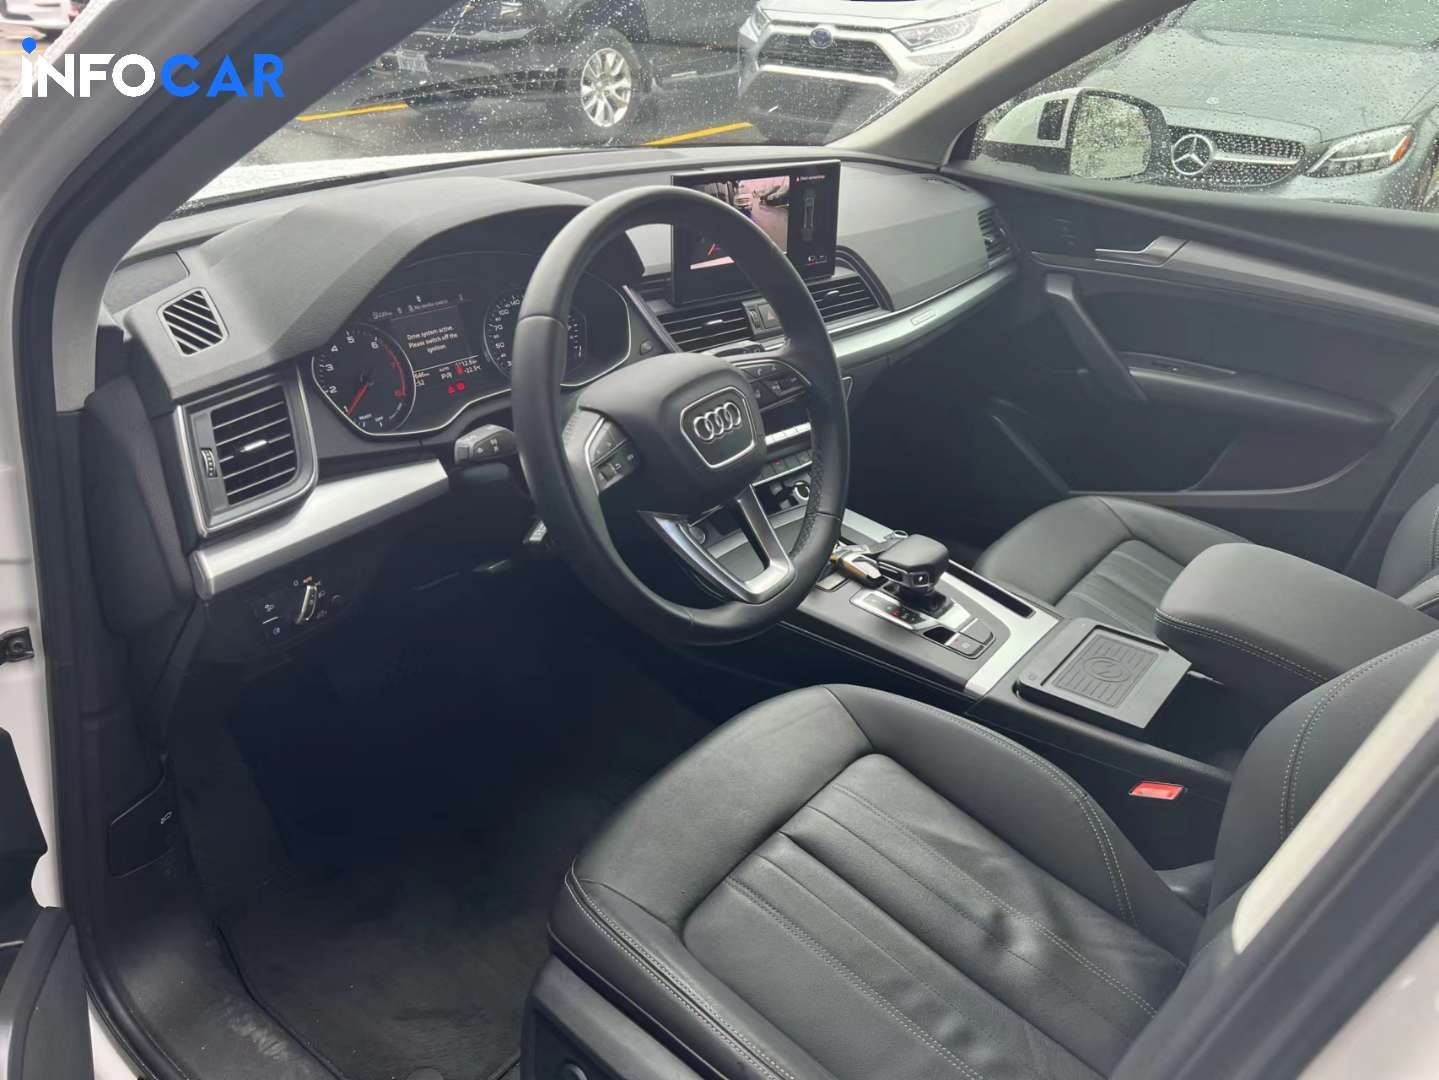 2021 Audi Q5 Kmort - INFOCAR - Toronto Auto Trading Platform